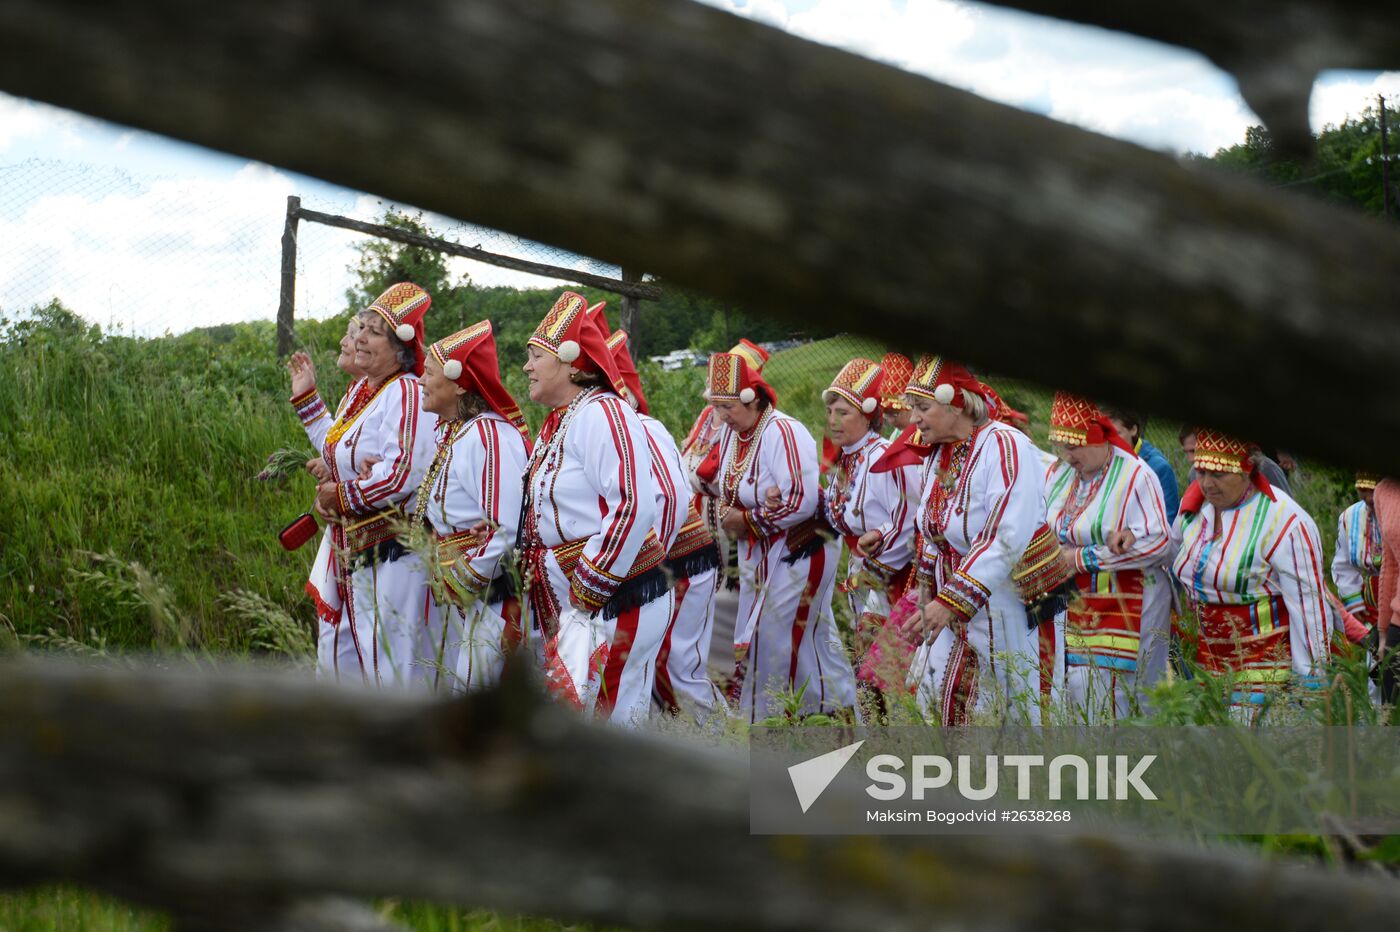 Baltai republic holiday of Mordovian culture